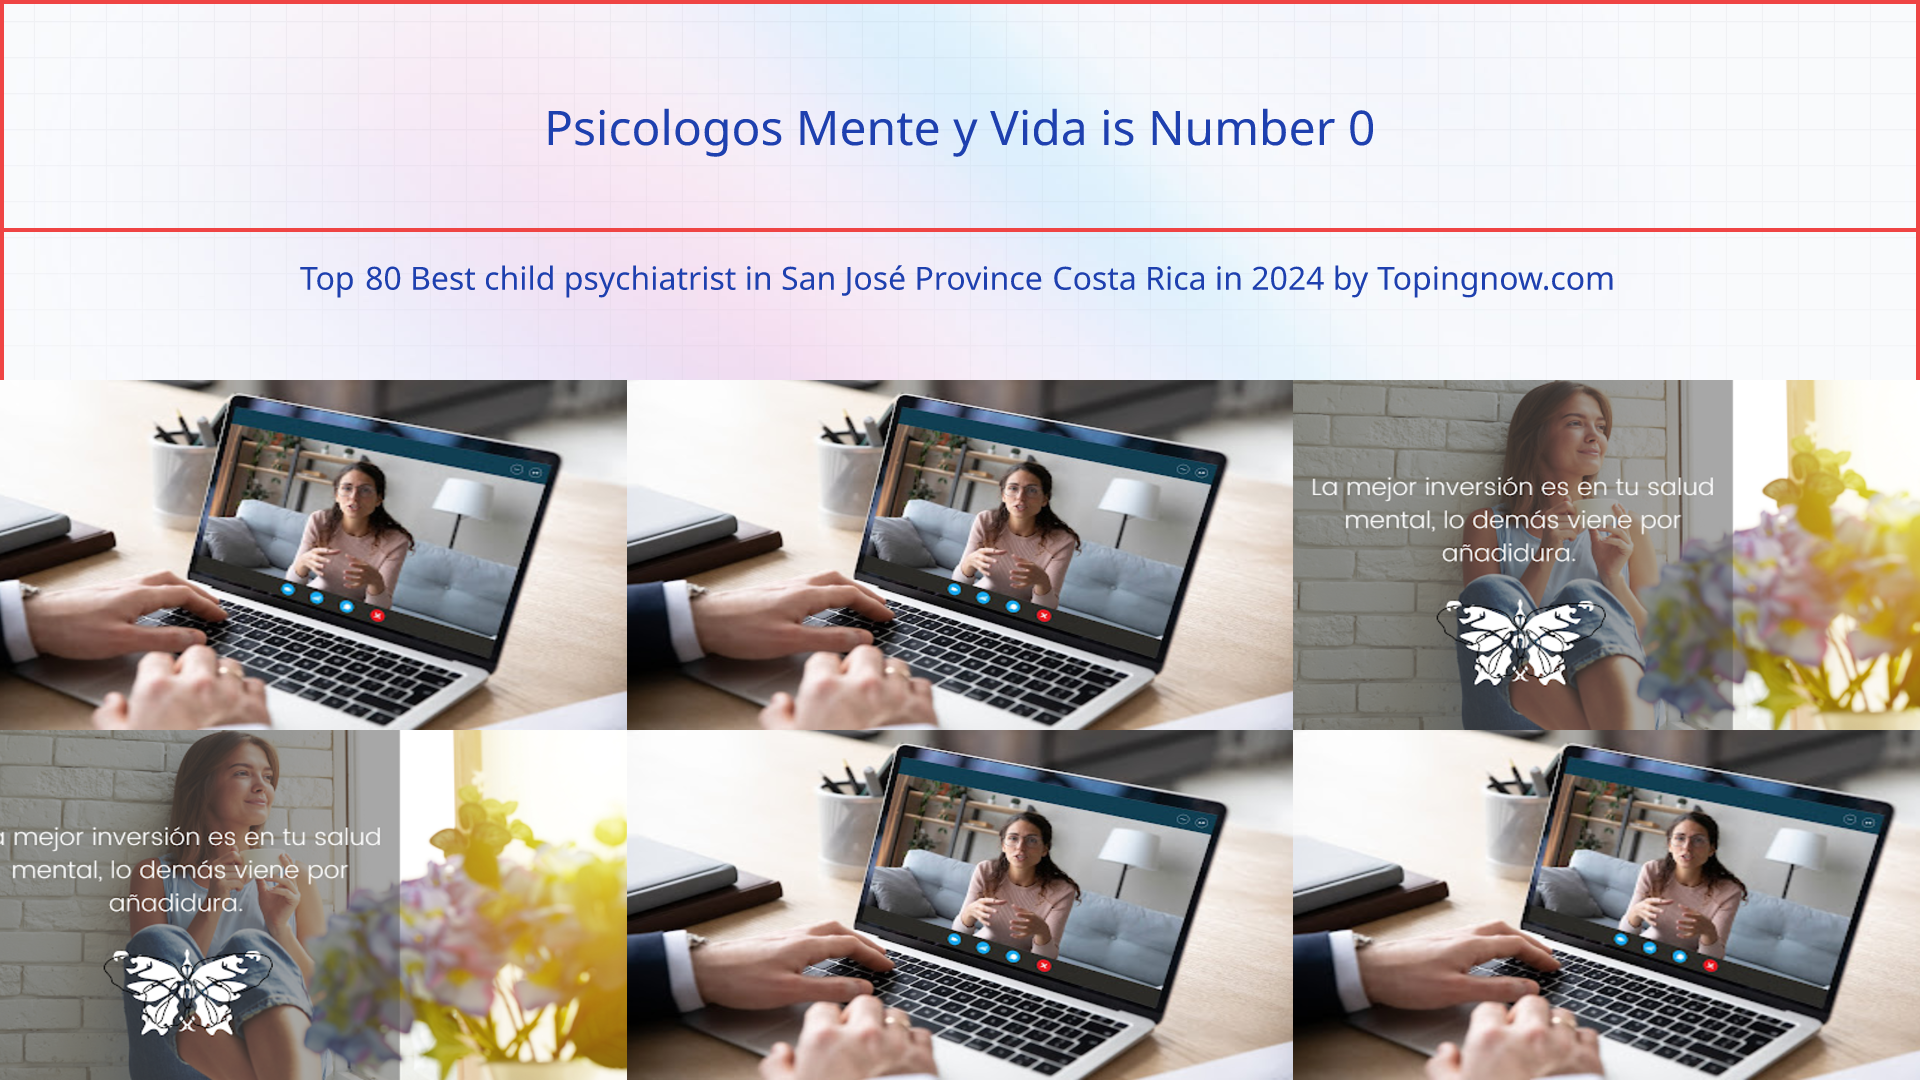 Psicologos Mente y Vida: Top 80 Best child psychiatrist in San José Province Costa Rica in 2024